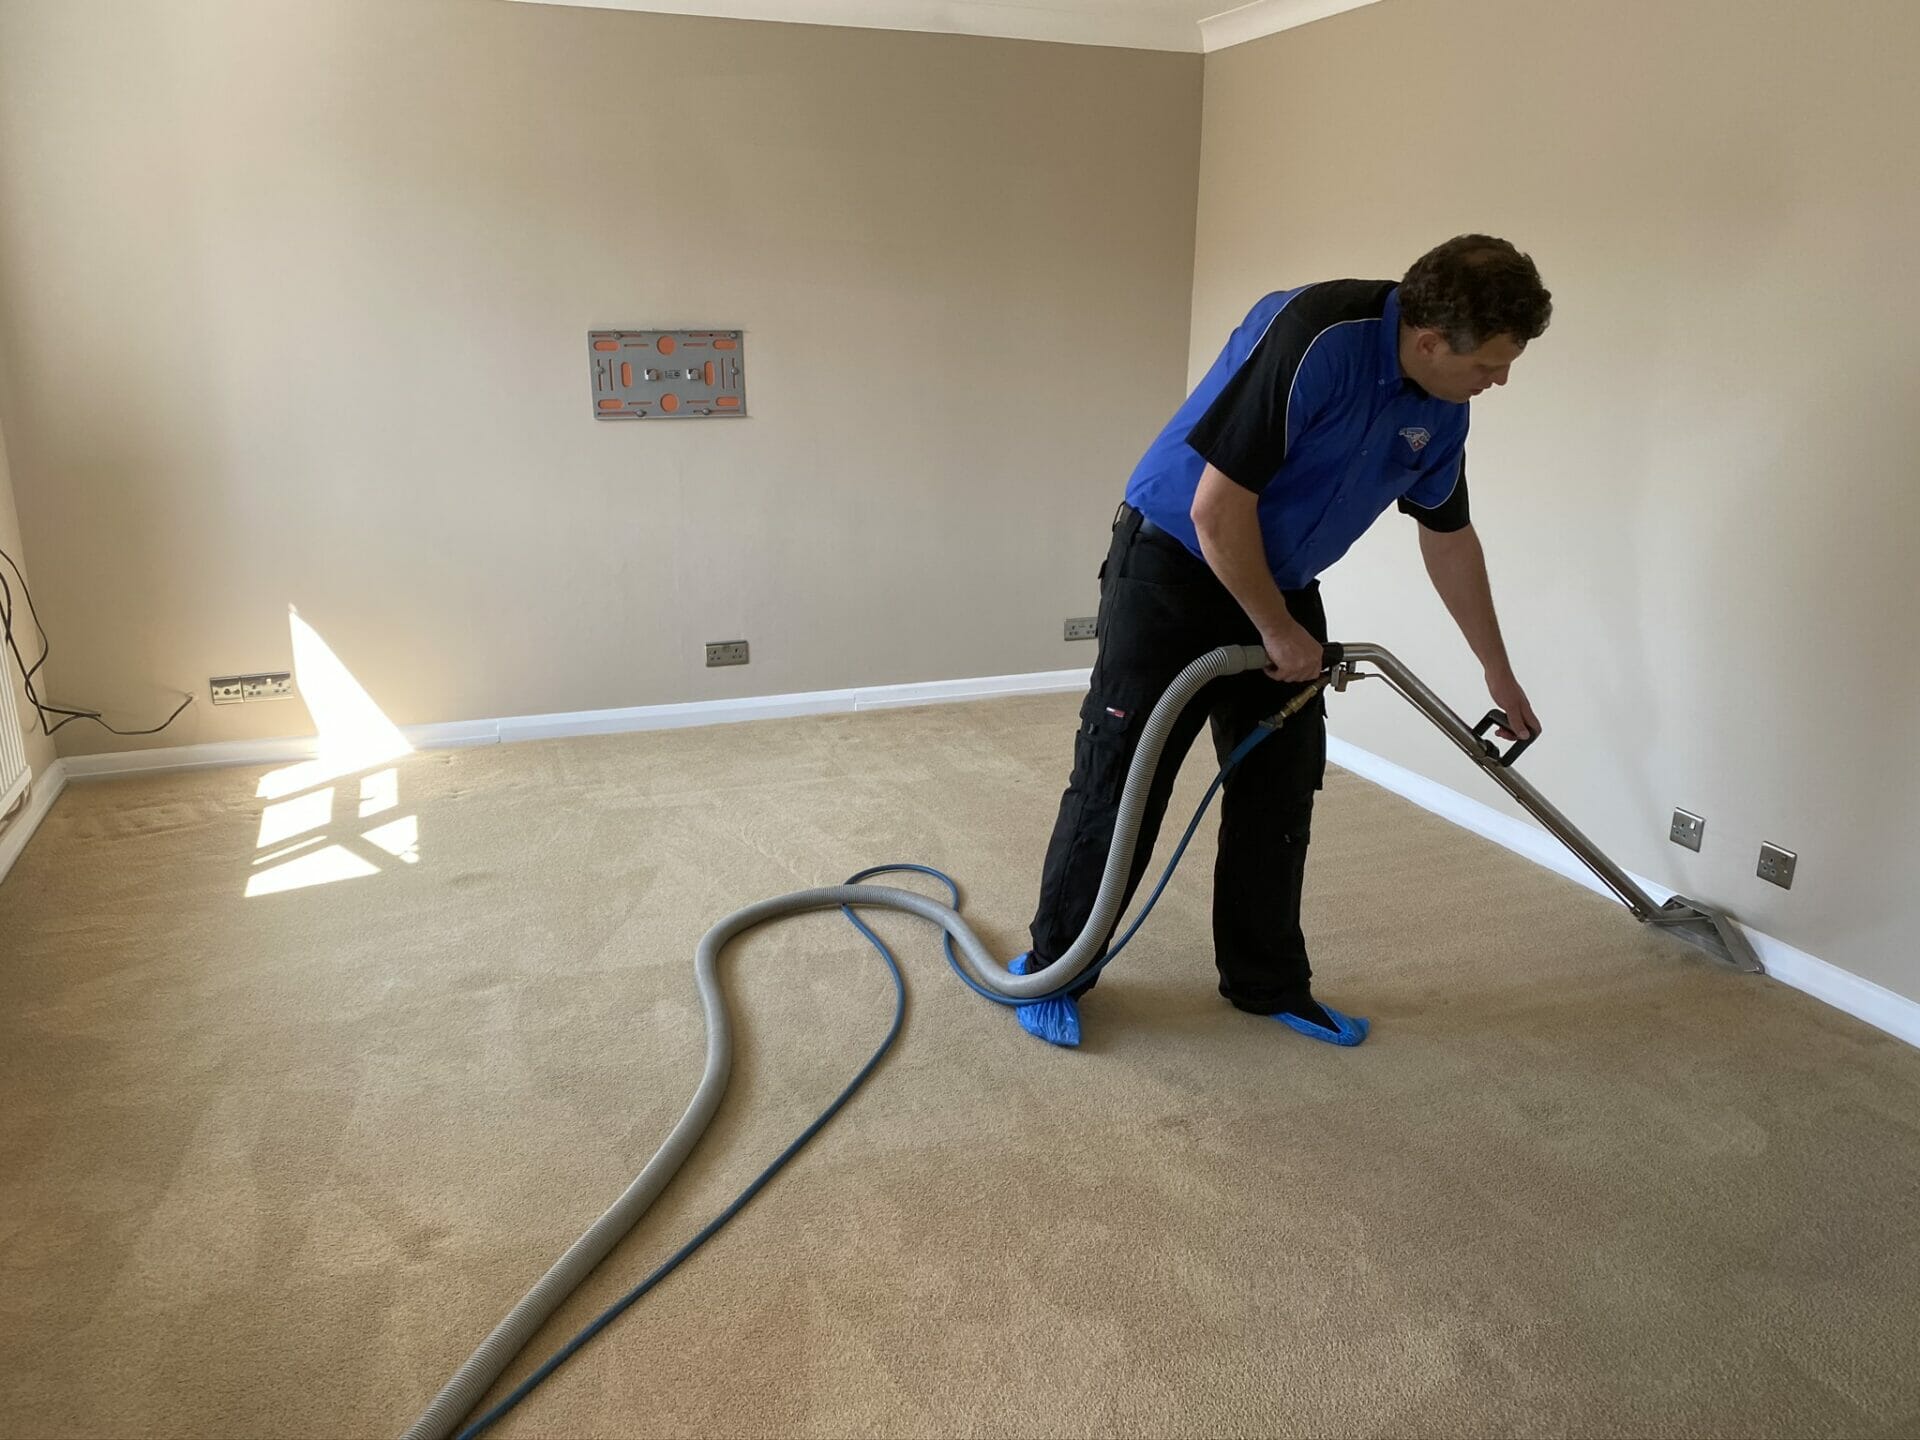 carpet cleaning cambridge